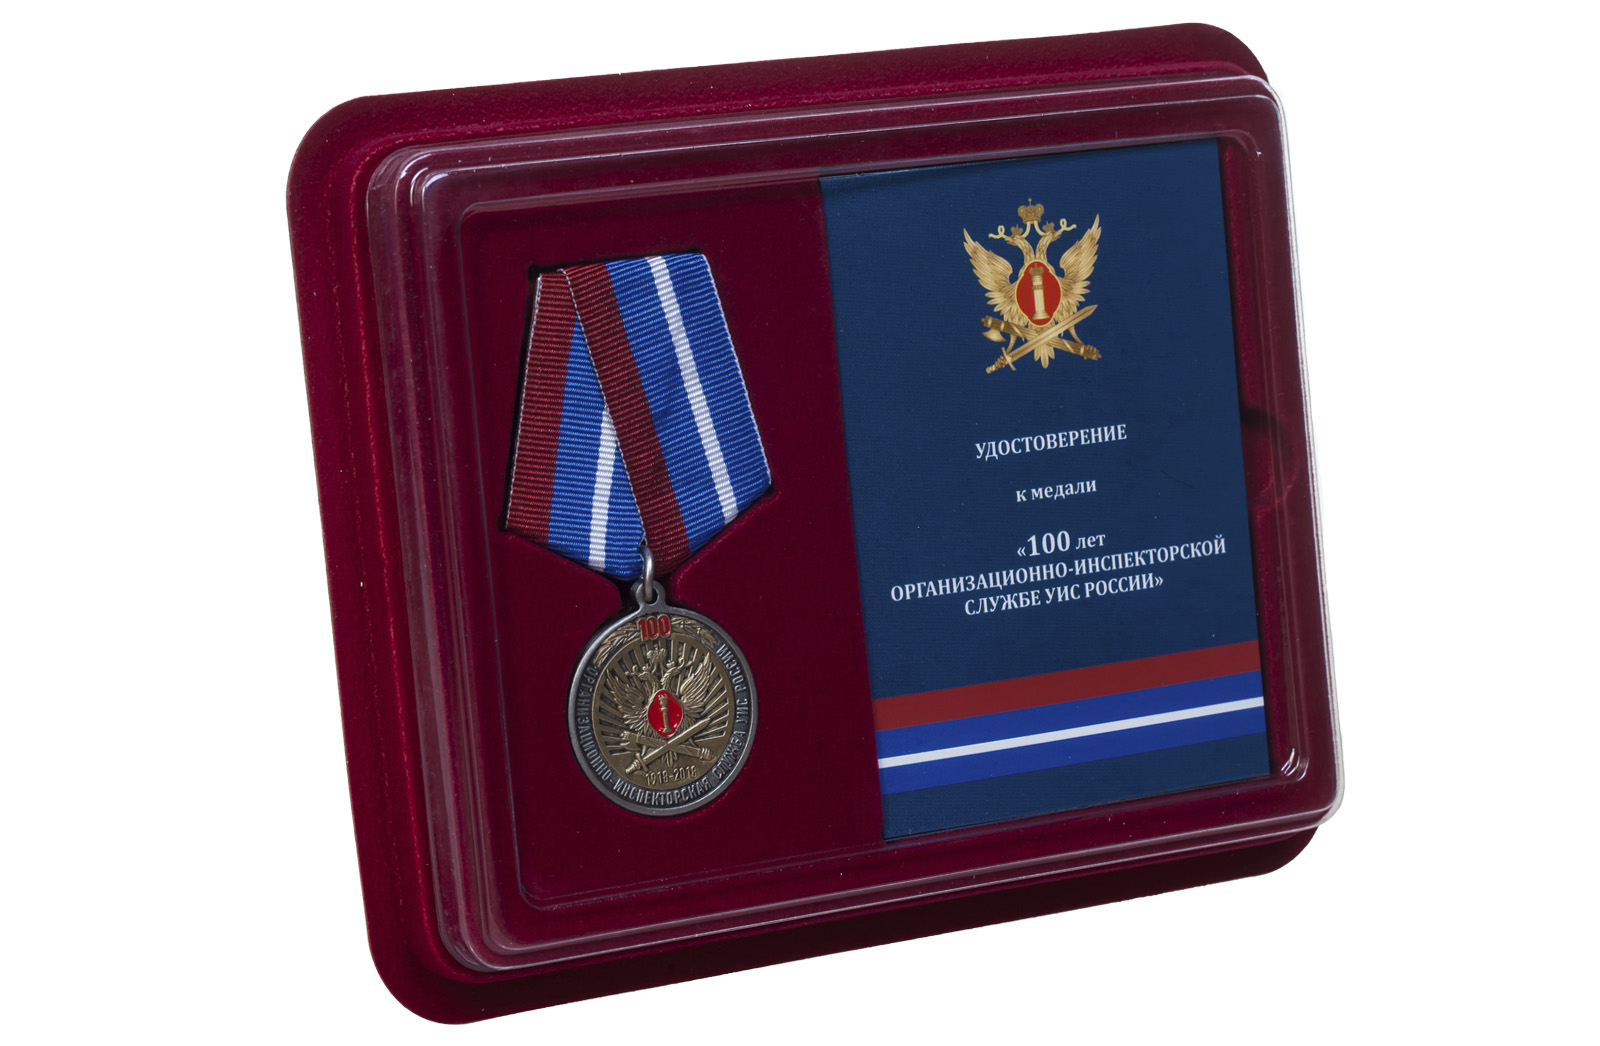 Купить юбилейную медаль 100 лет Организационно-инспекторской службы УИС России оптом